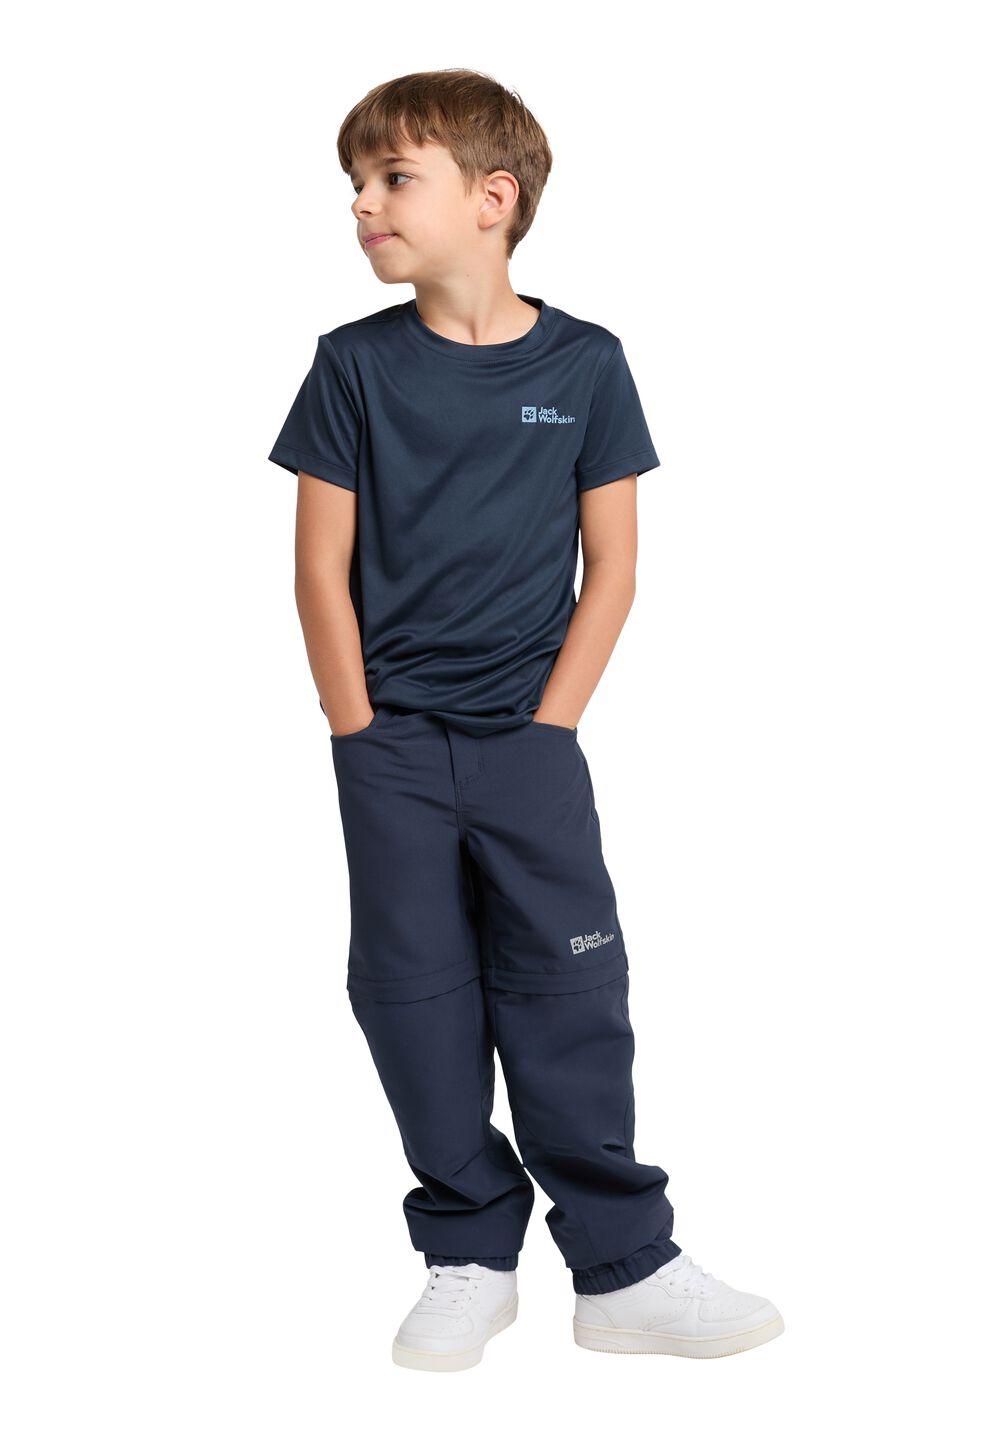 Jack Wolfskin Funktionsshirt Kinder Active Solid T-Shirt Kids 140 blau night blue von Jack Wolfskin